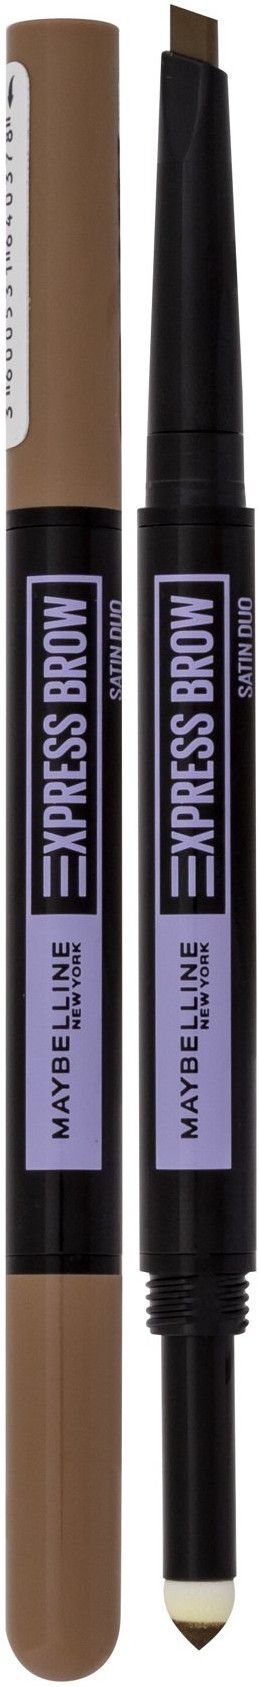 Maybelline Express Brow Satin Duo Dark 01 Blonde